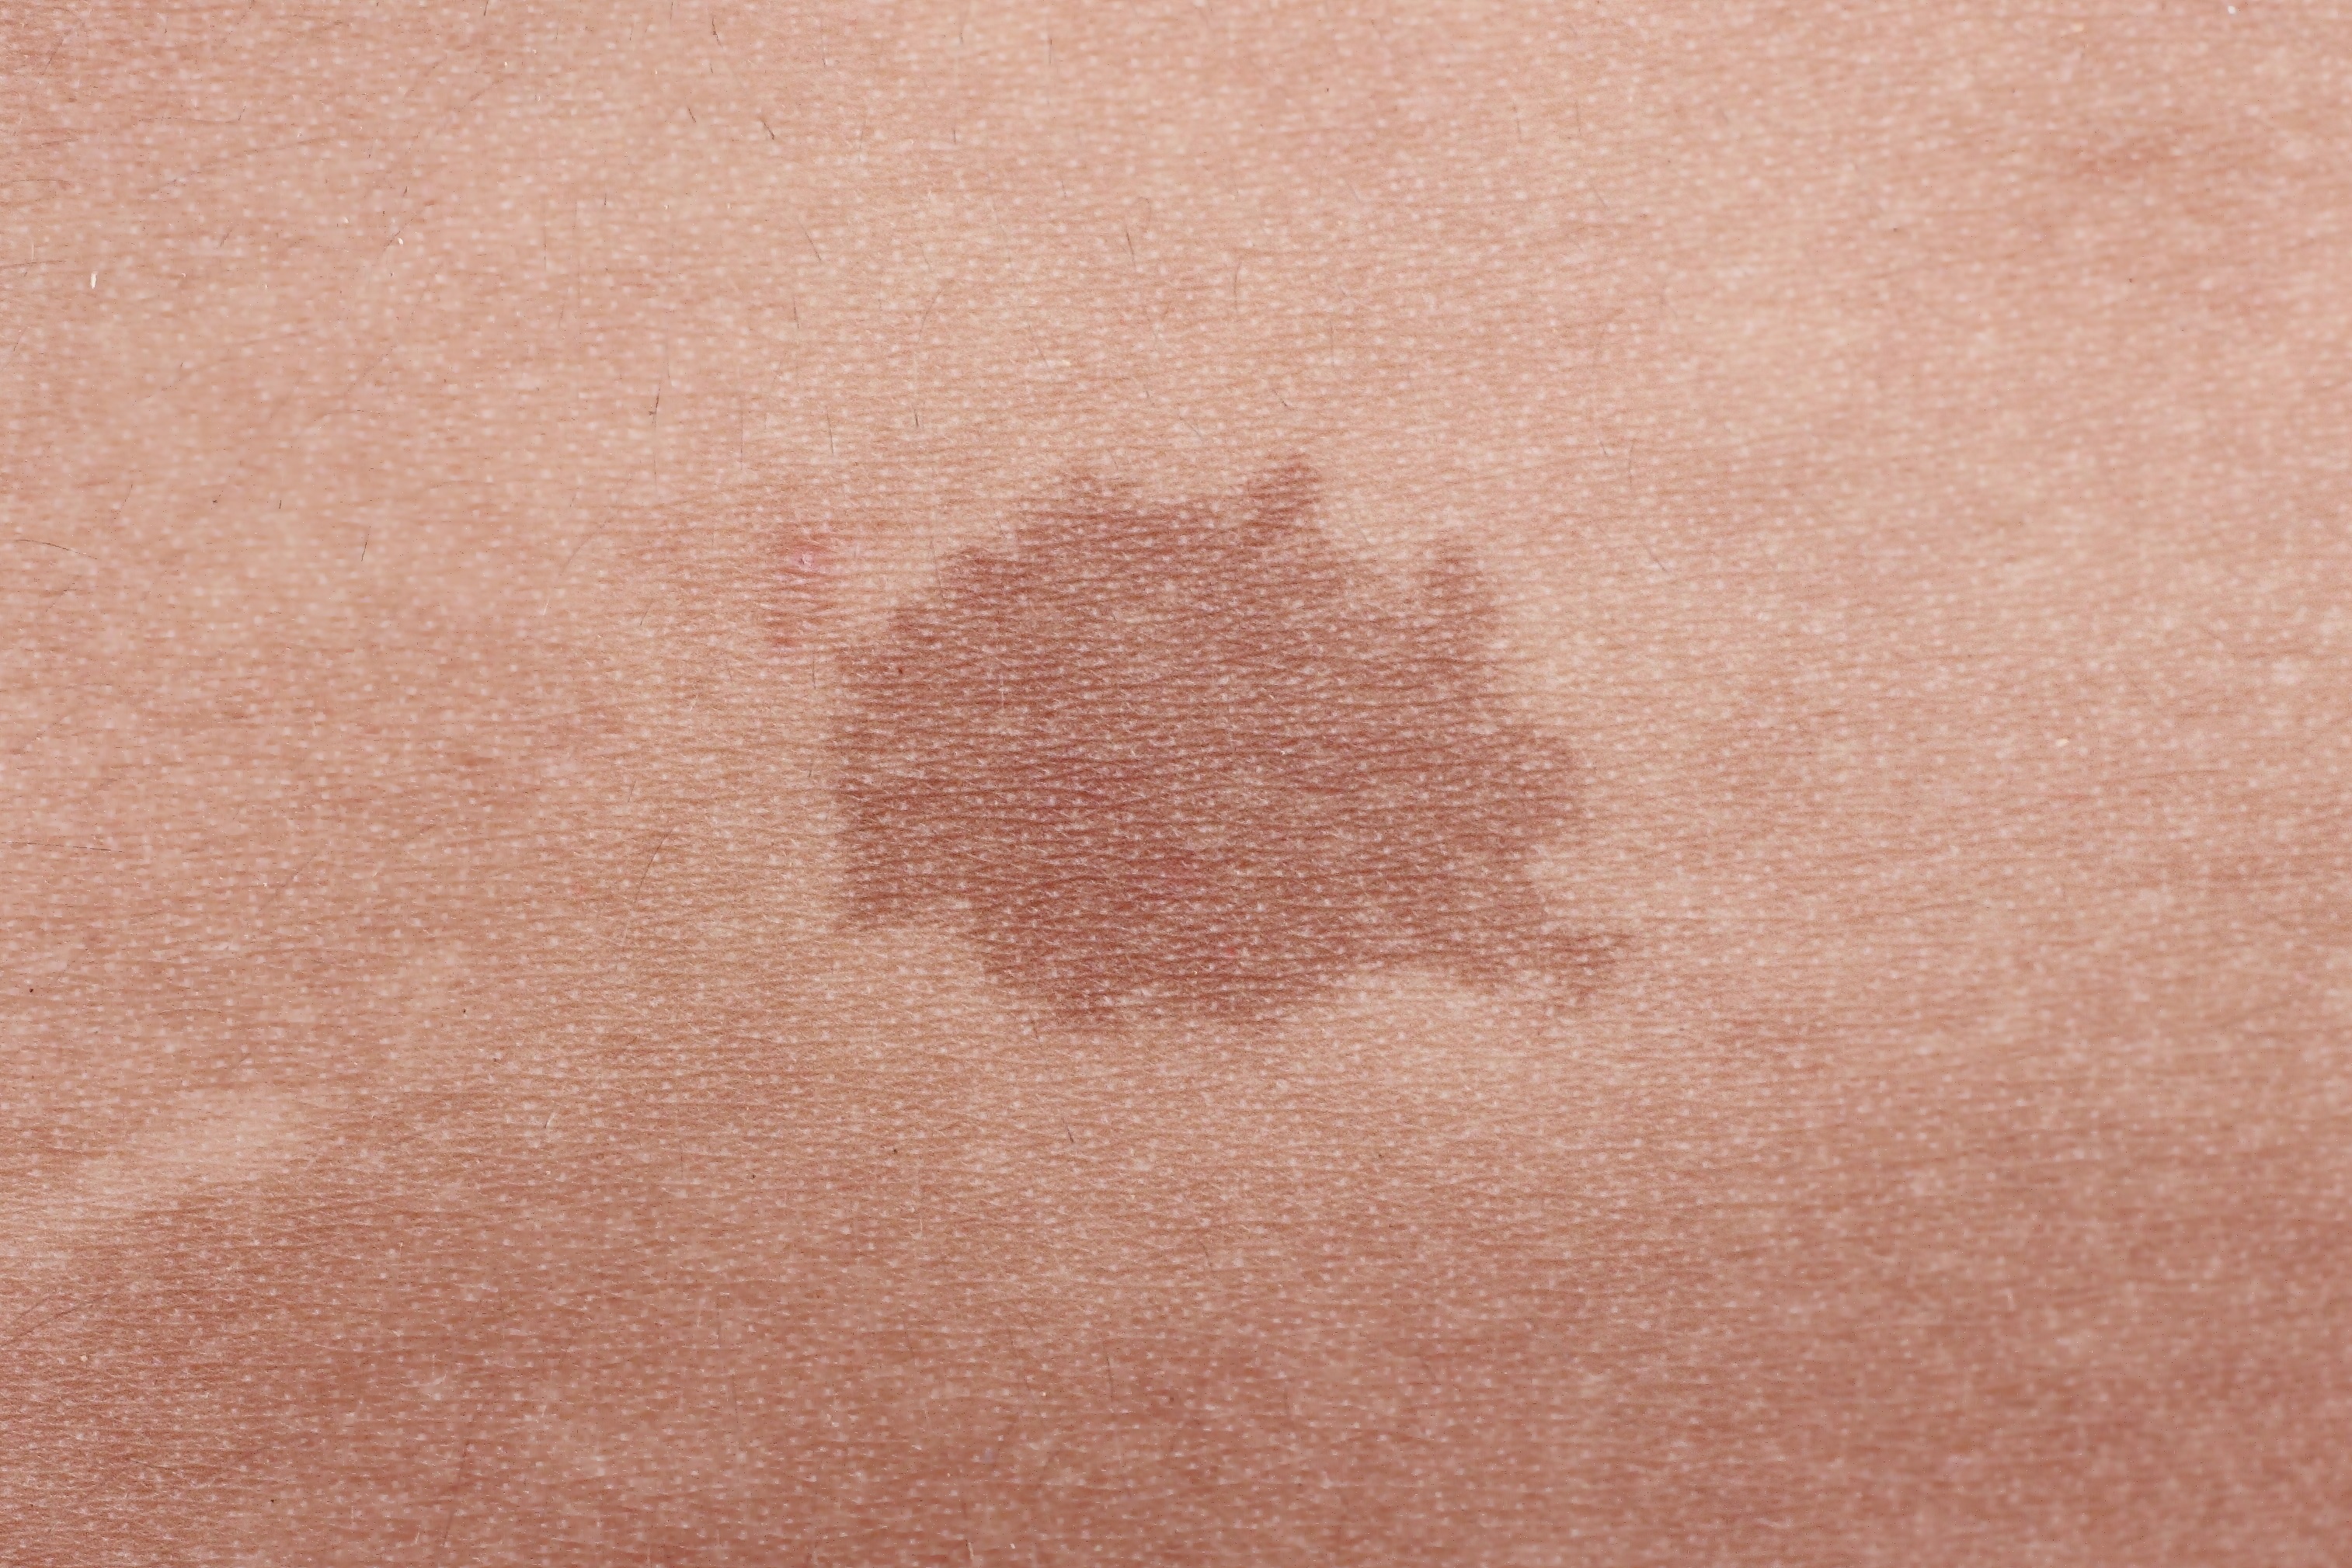 Brown birthmark. | Source: Shutterstock